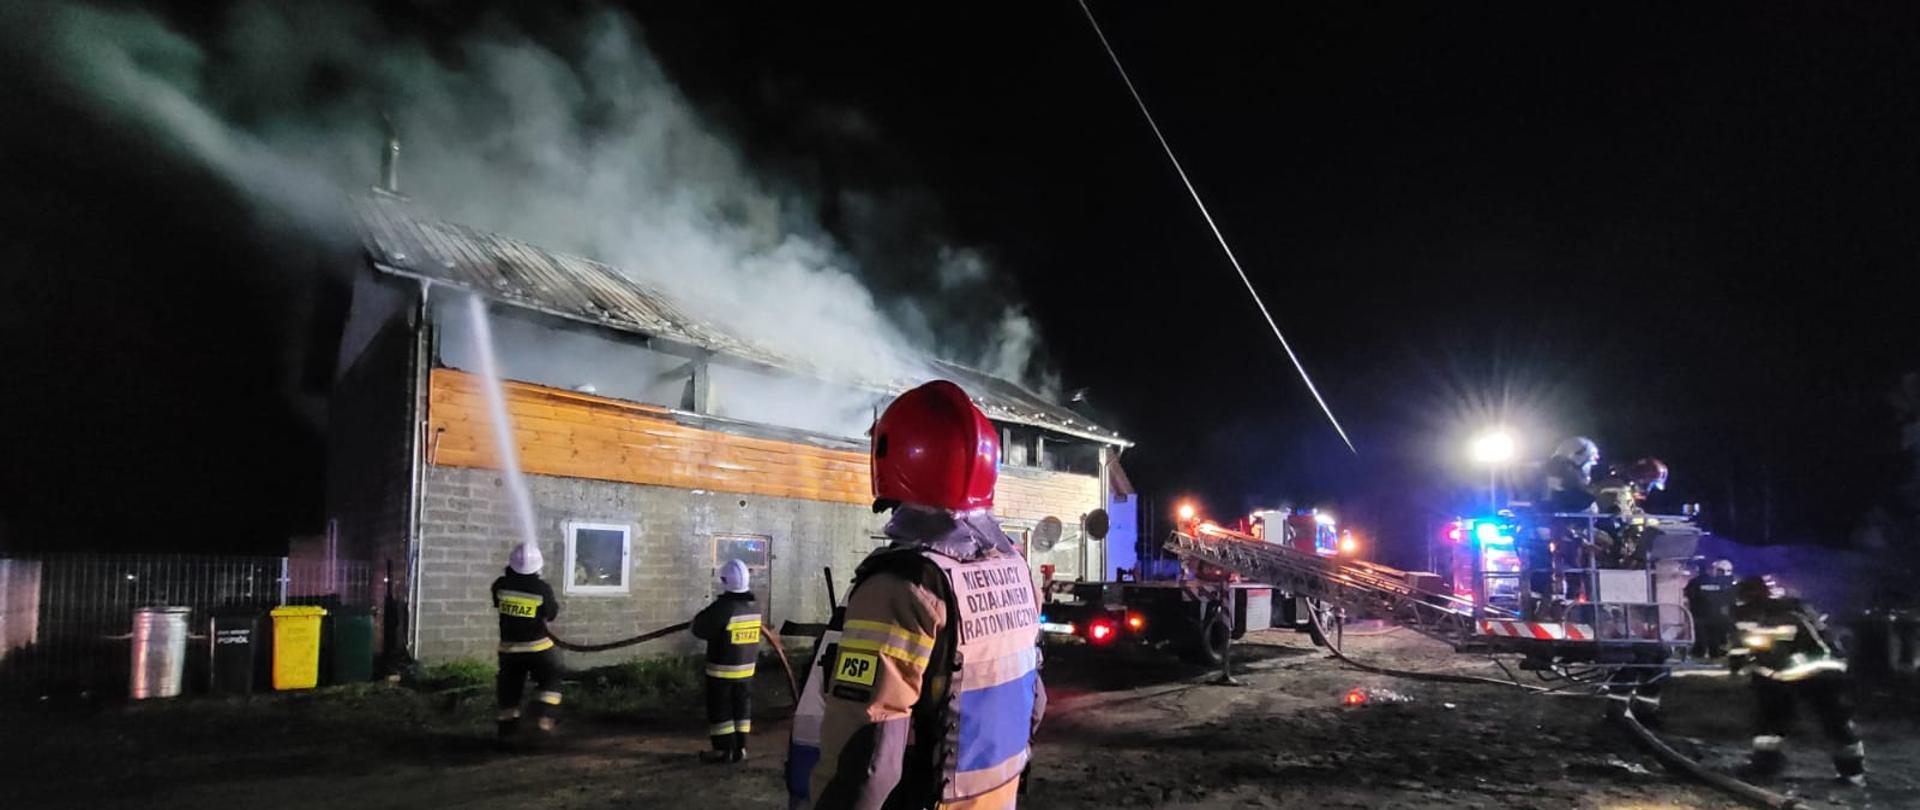 Strażak kierujący działaniami ratowniczymi obserwuje akcję. W tle widać palący się budynek gospodarczy oraz strażaków uczestniczących w akcji.